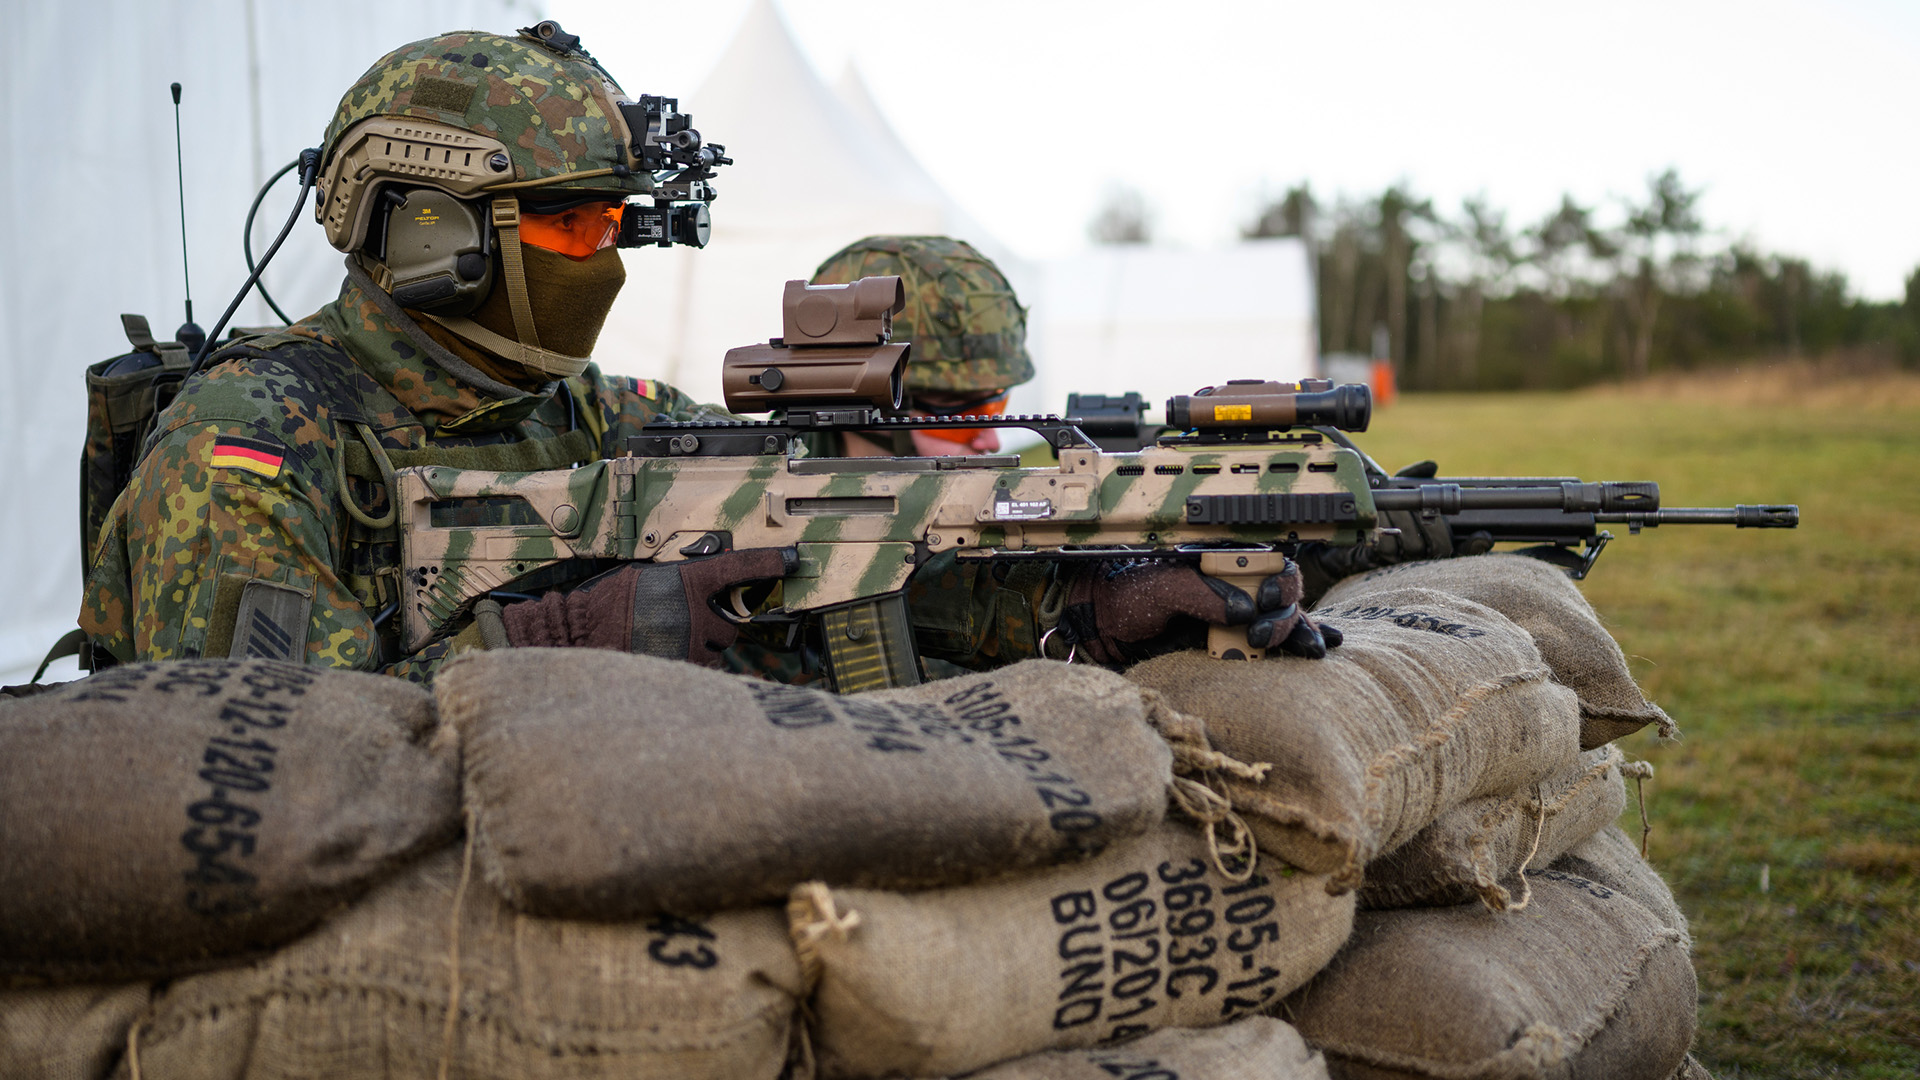 Soldaten der Bundeswehr haben mit dem Sturmgewehr vom Typ G36 A2 während einer Vorführung hinter Sandsäcken Stellung bezogen. | dpa